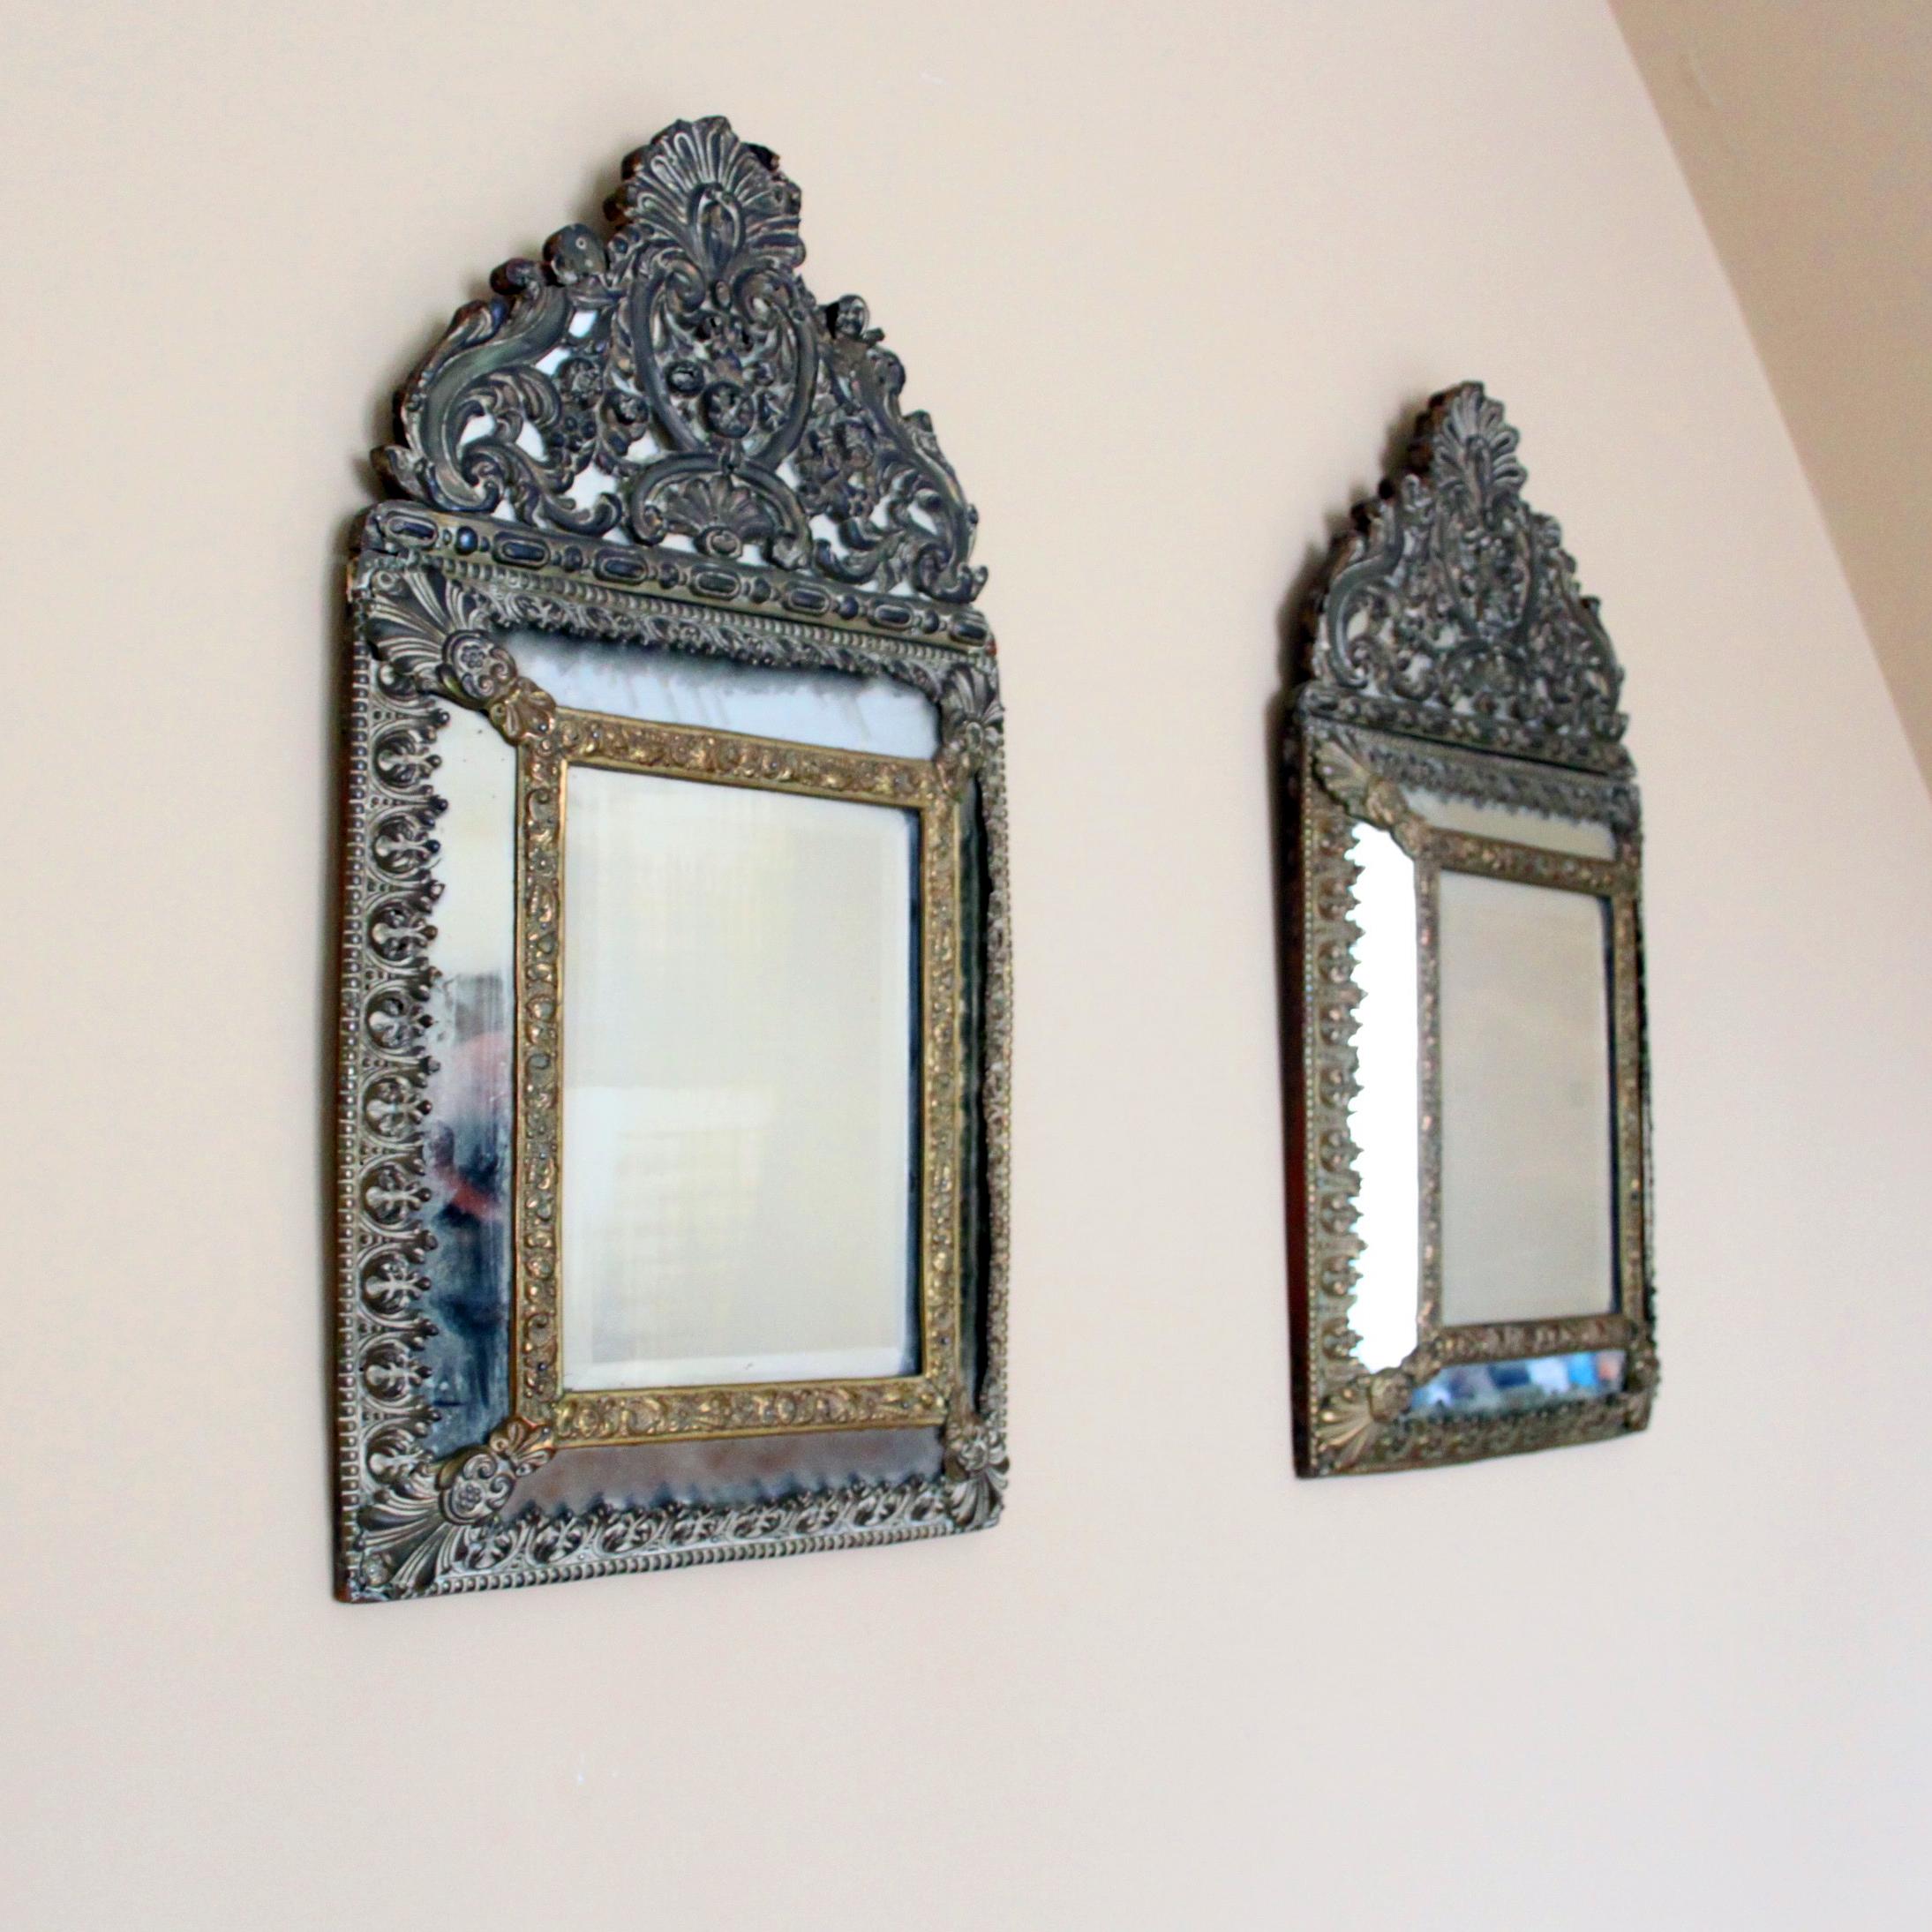 Ein schönes Paar vergoldeter antiker Spiegel mit altem, facettiertem Glas. 

Die Spiegel stammen aus Holland, 19. Jahrhundert, und sind in ornamentierter, barocker Schnittform. 

Sie sind aus vermessingtem Blech und Holz gefertigt. 

Eine